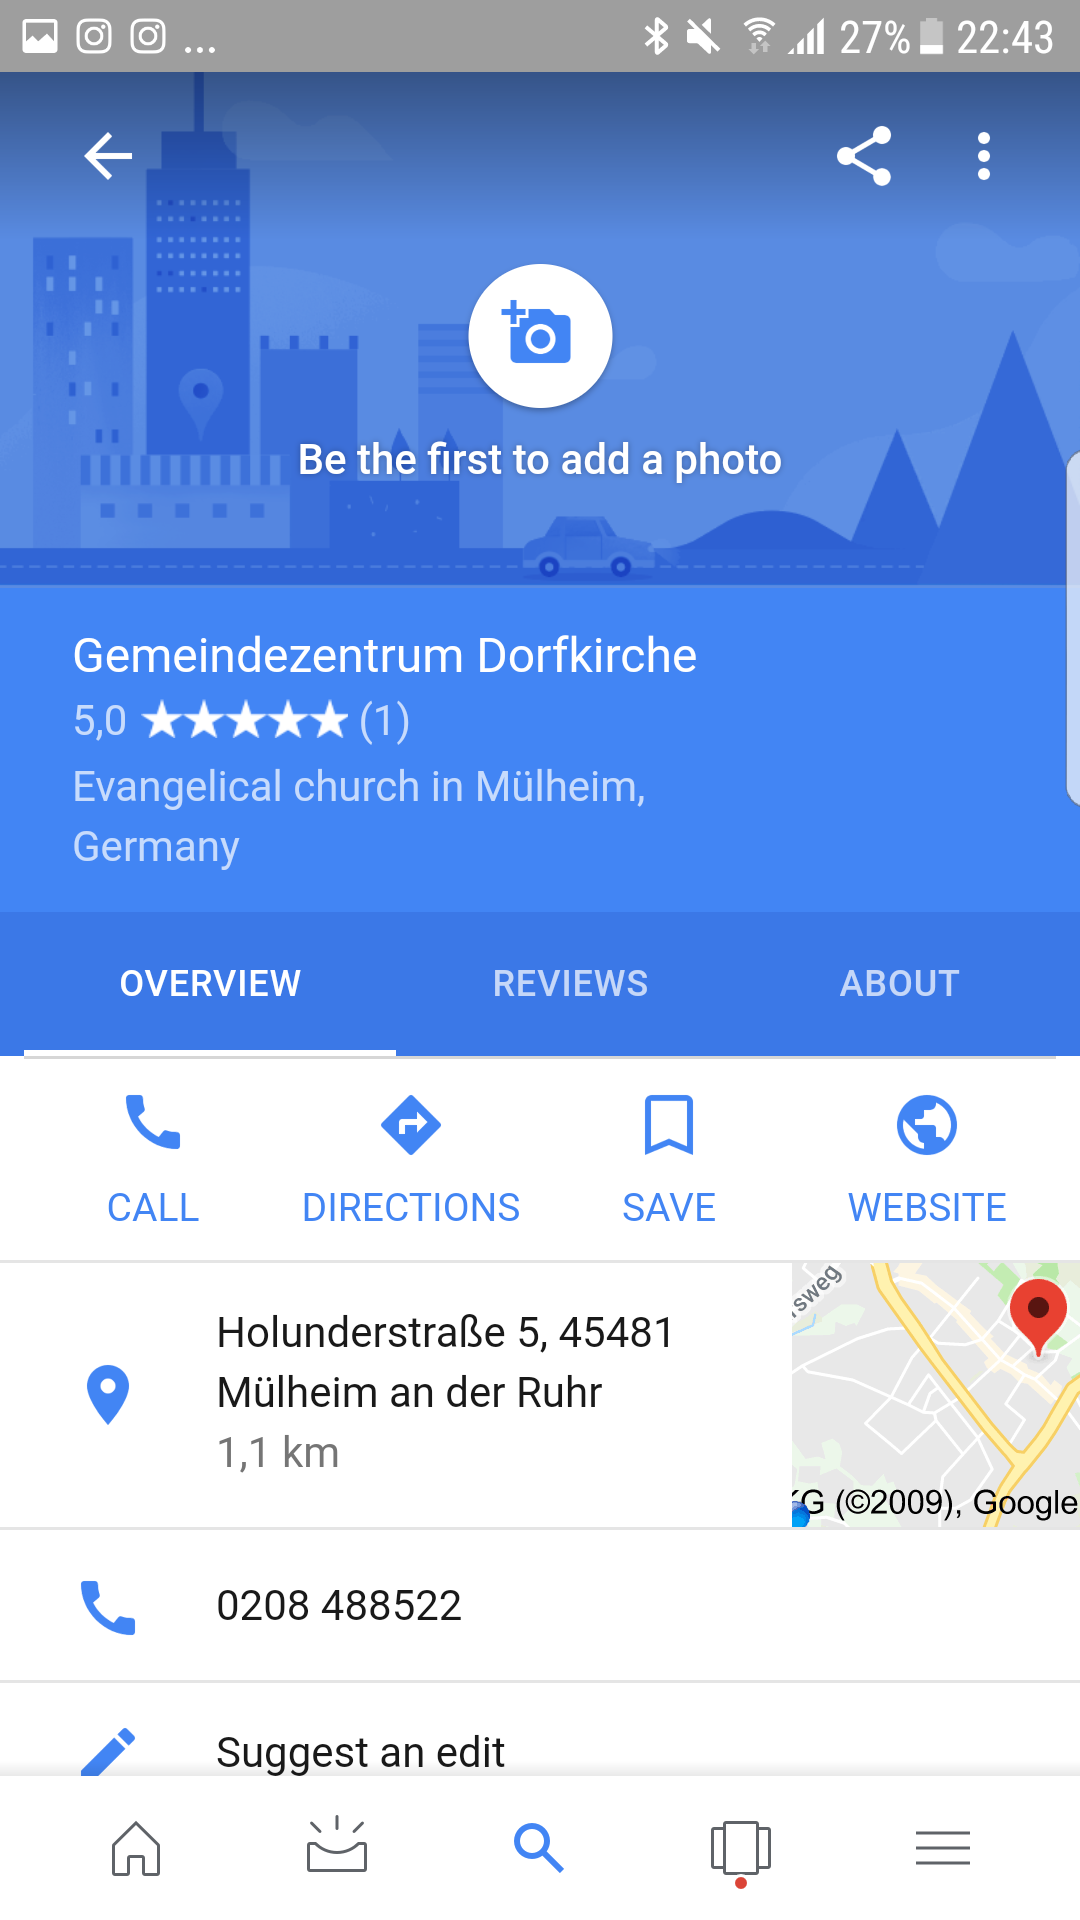 Info-Karte für die Dorfkirche Saarn